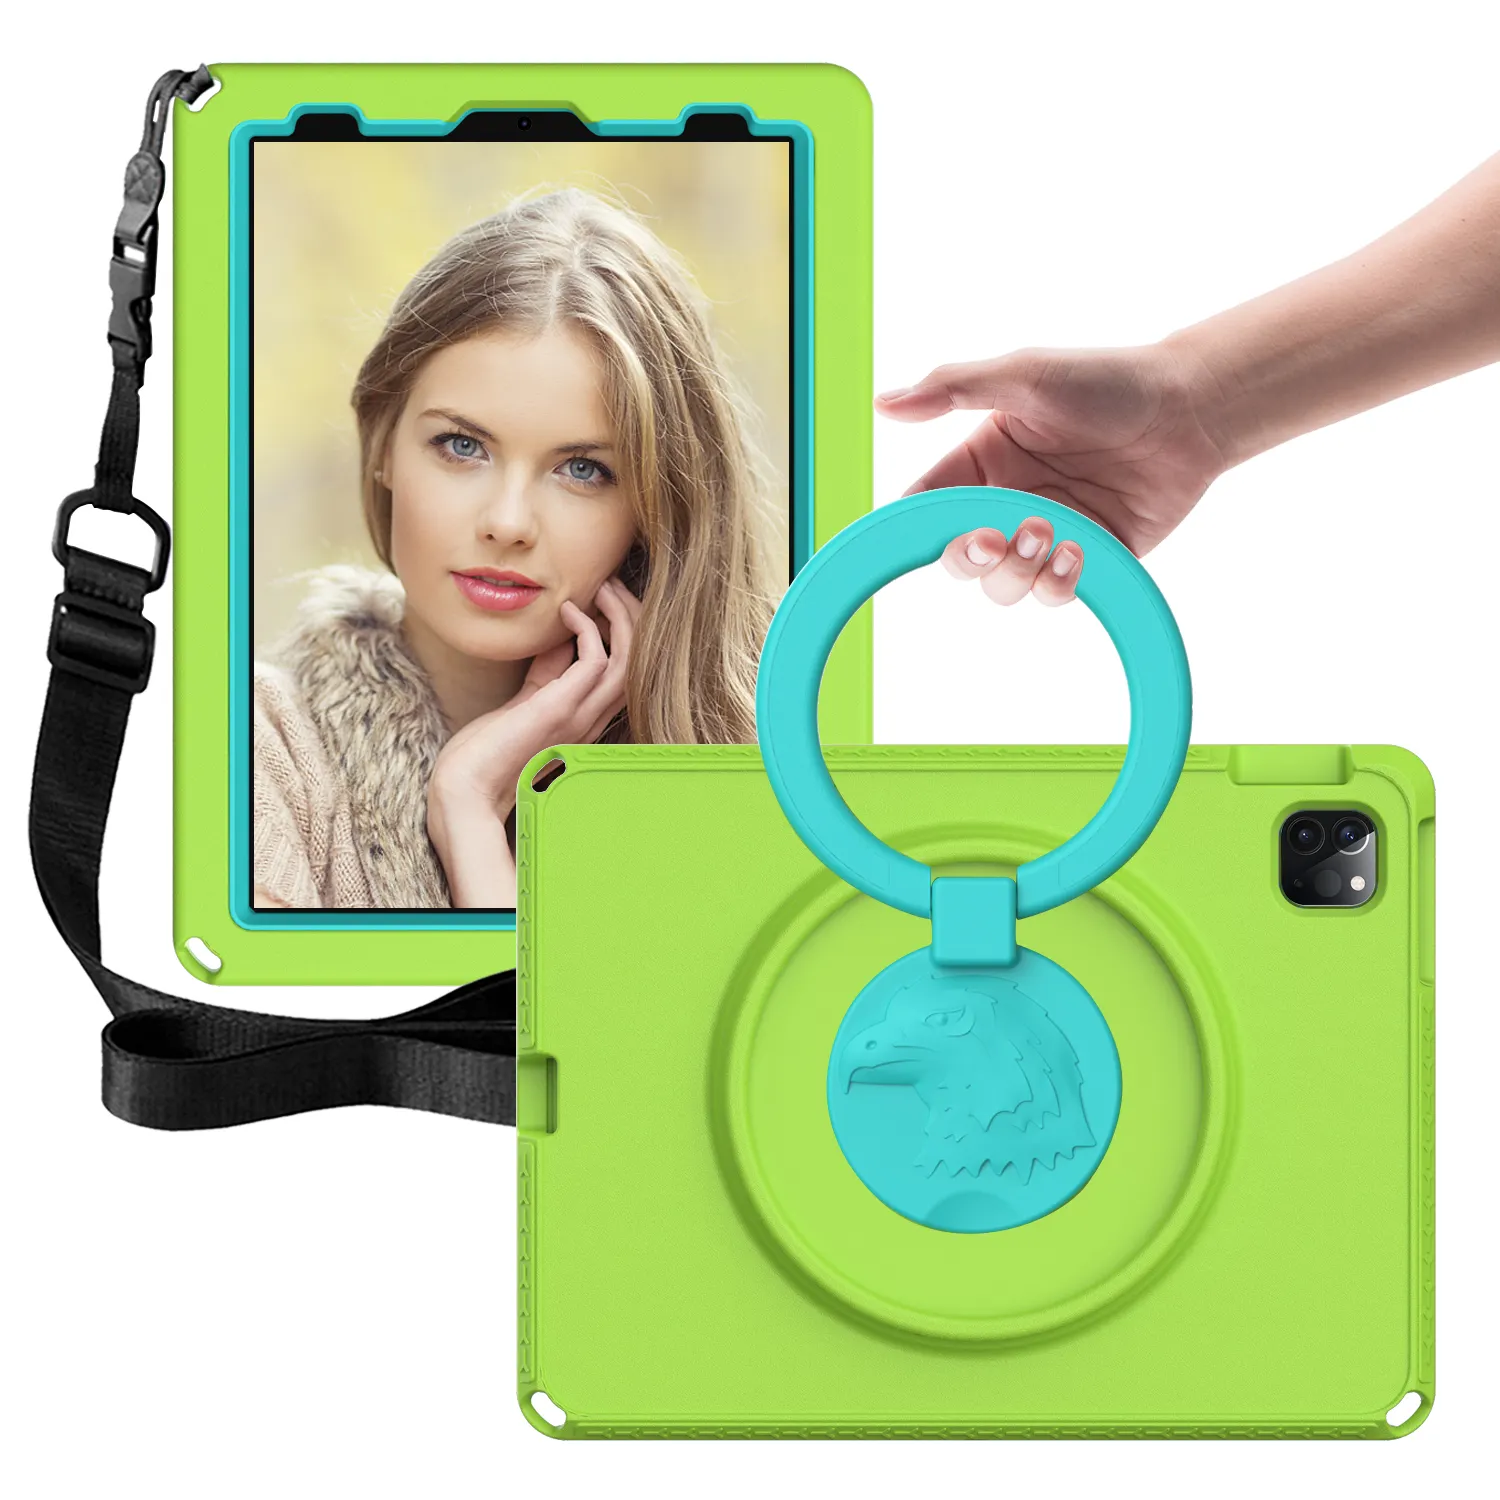 EVA Schaumstoff gehäuse Ring griff Ständer und Schulter gurt eingebauter Displays chutz für iPad Pro 11 9.7 10.2 12.9 mini 2 3 4 5 6 8.3"